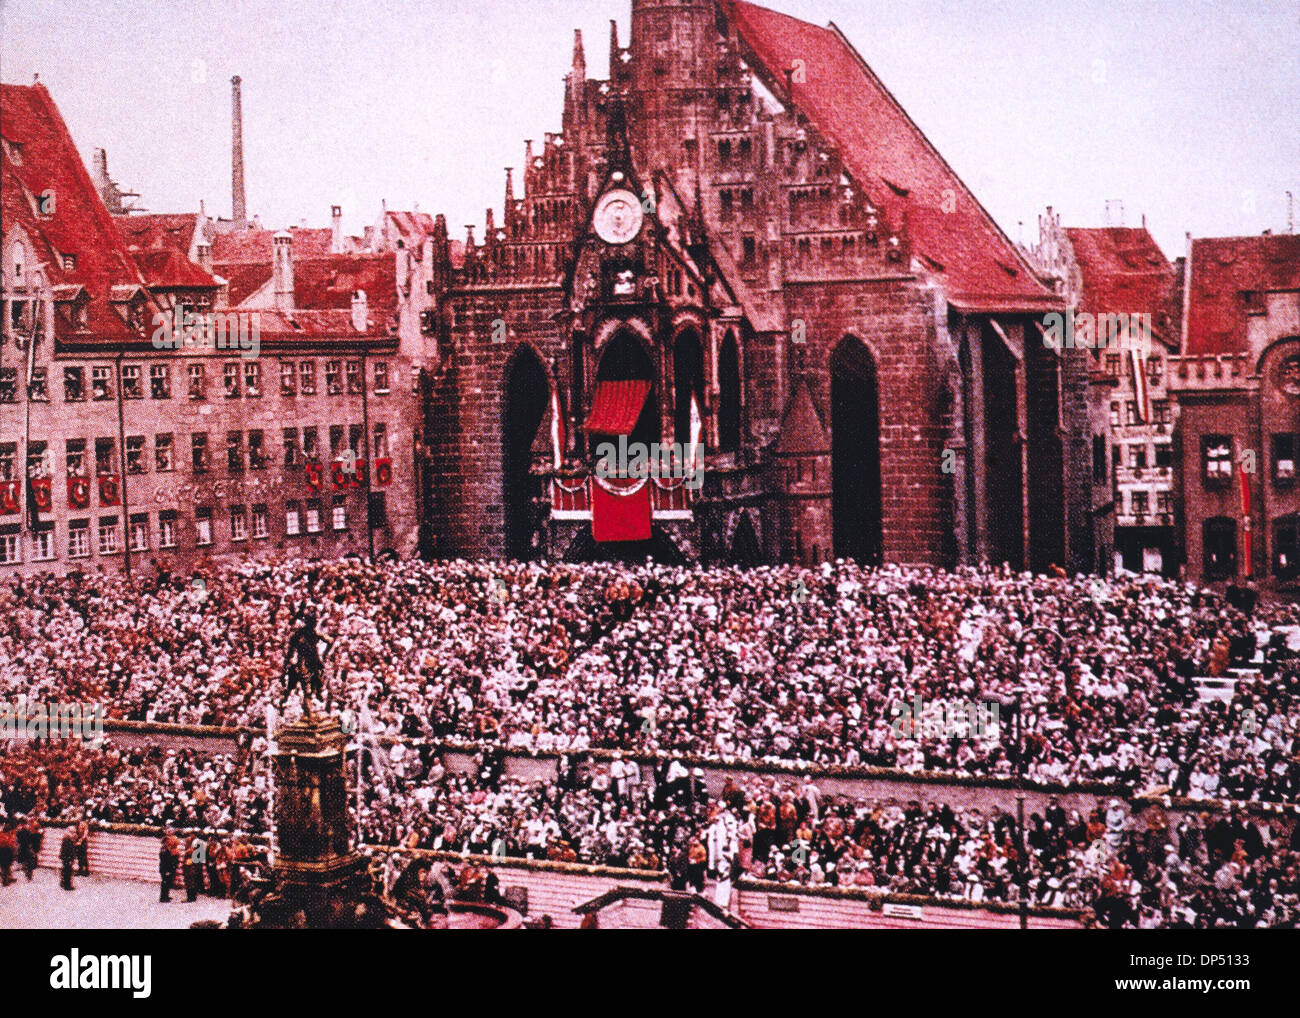 Foule de spectateurs assis en face de l'église Frauenkirche, Rallye nazie au cours de Nuremberg, Allemagne, 1933 Banque D'Images